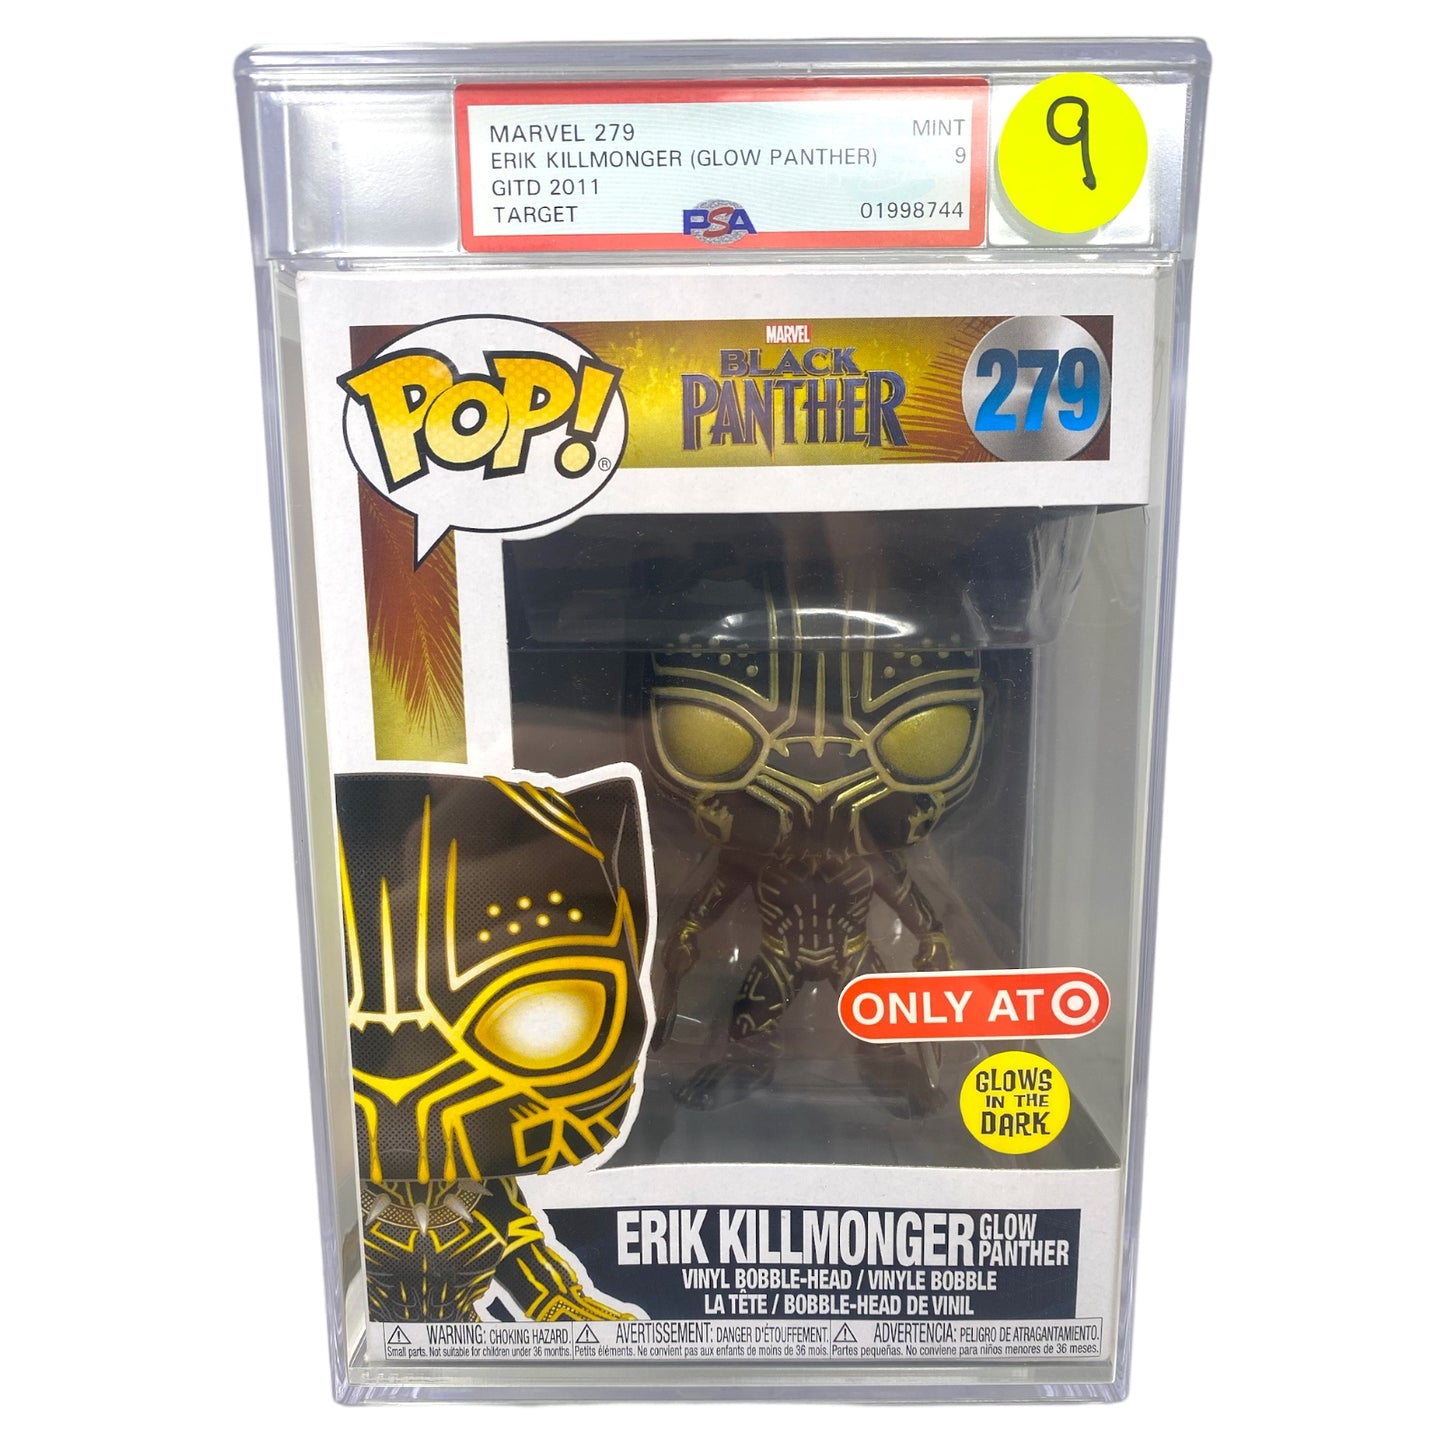 PSA Grade 9 2011 Erik Killmonger (Glow Panther) 279 Glows in the Dark, Target Exclusive